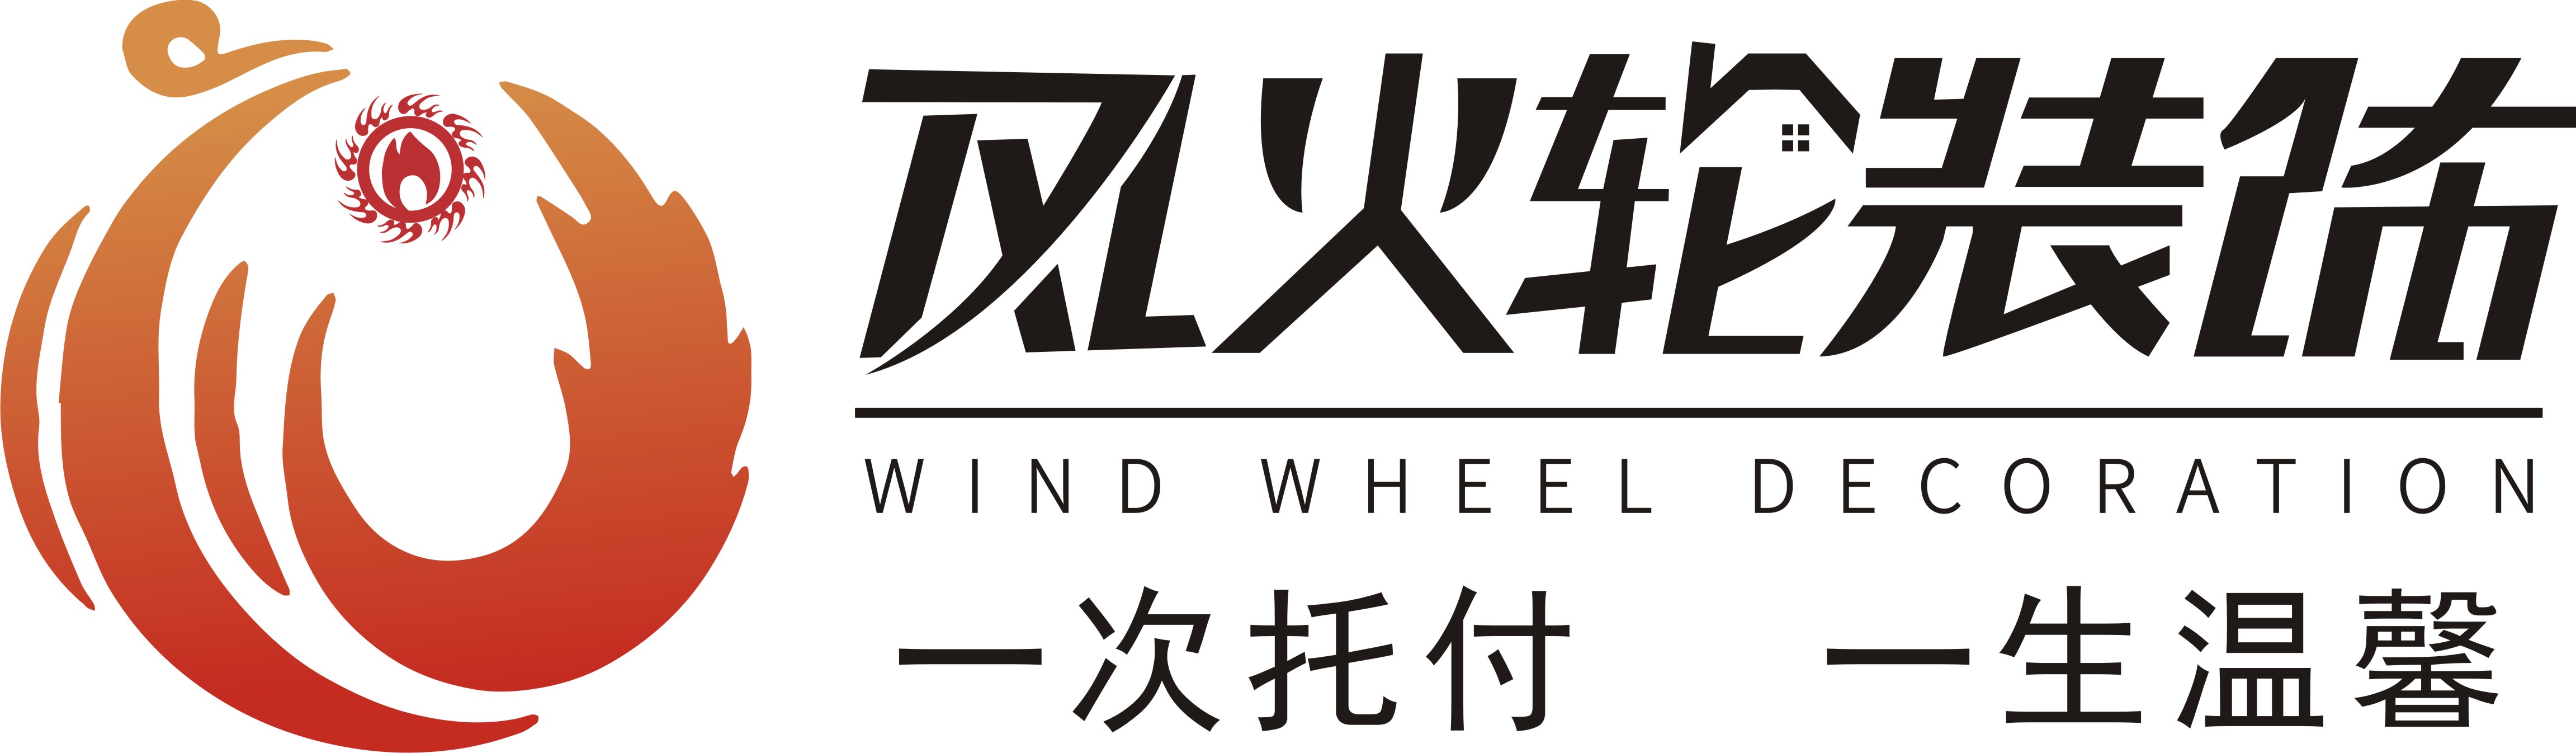 安徽风火轮装饰工程有限公司